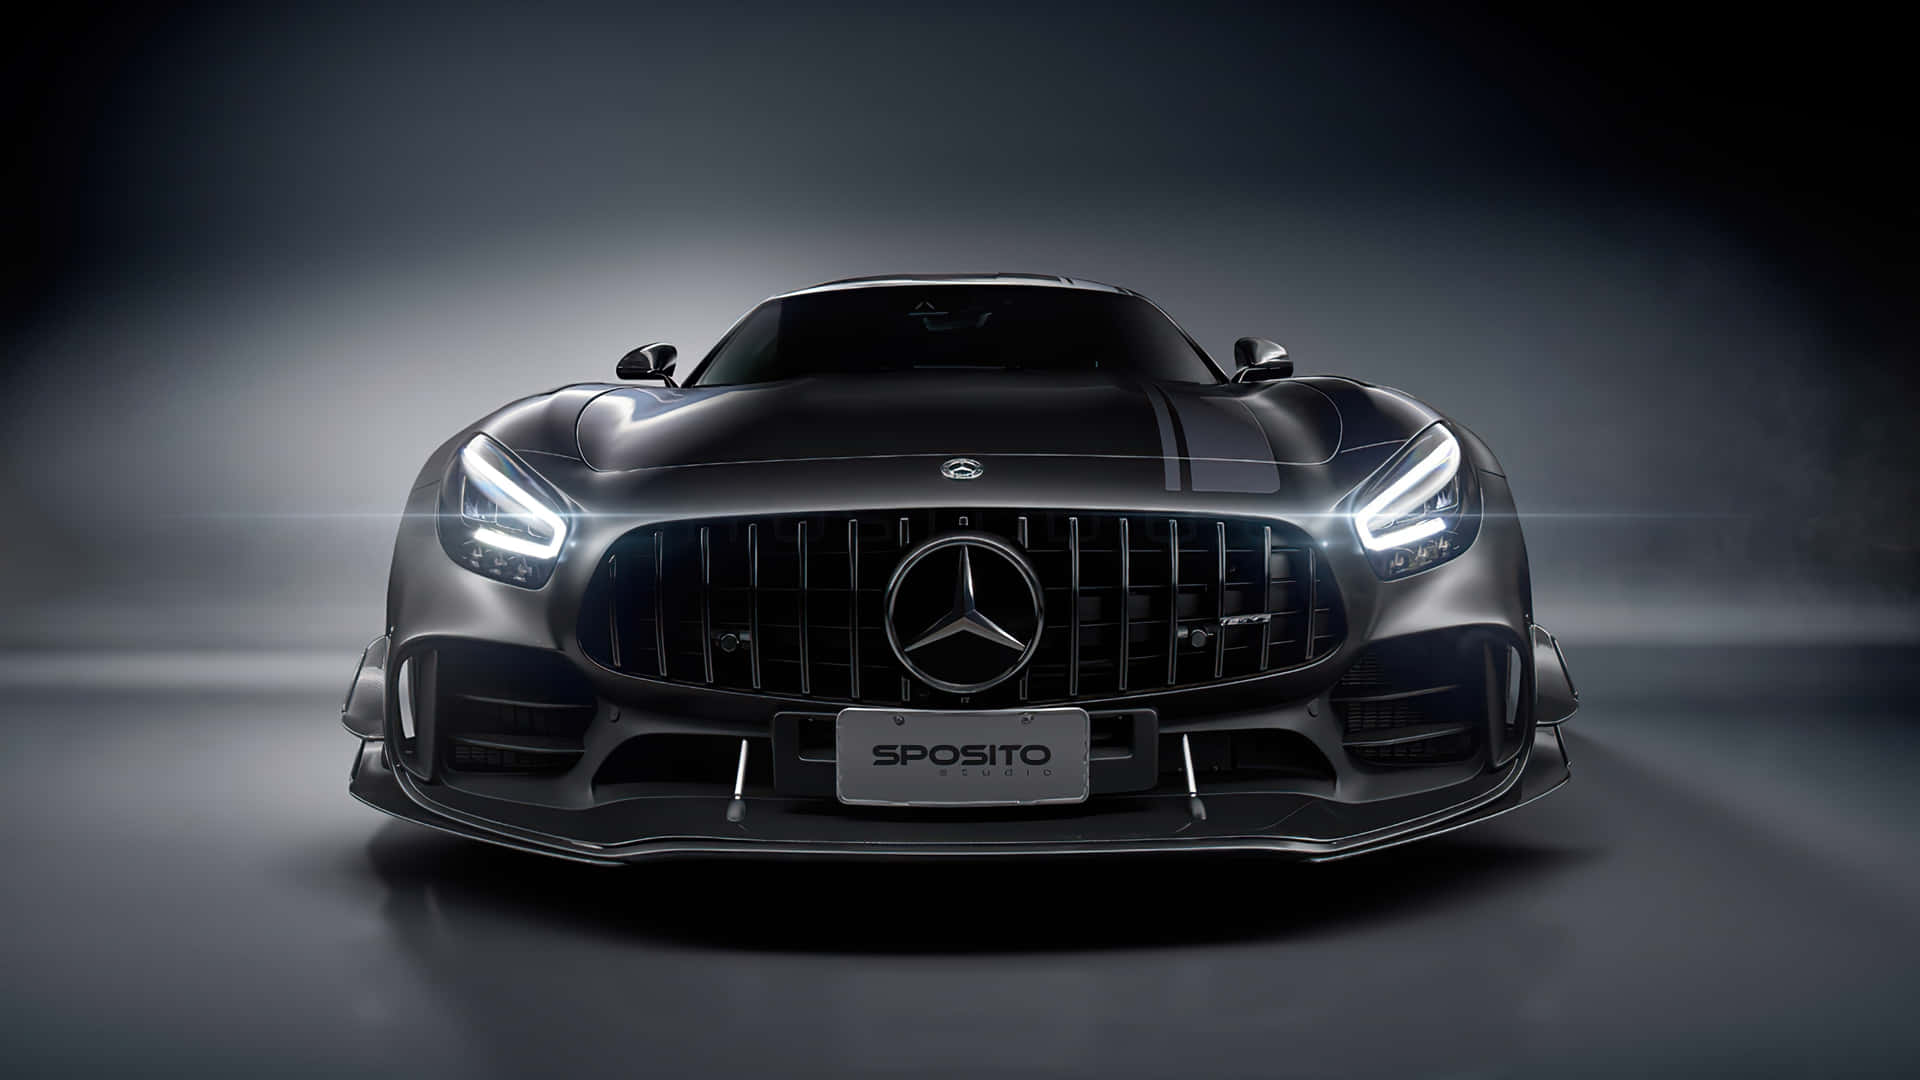 Erlebensie Den Luxus Dieses Modernen Mercedes-autos In 4k! Wallpaper